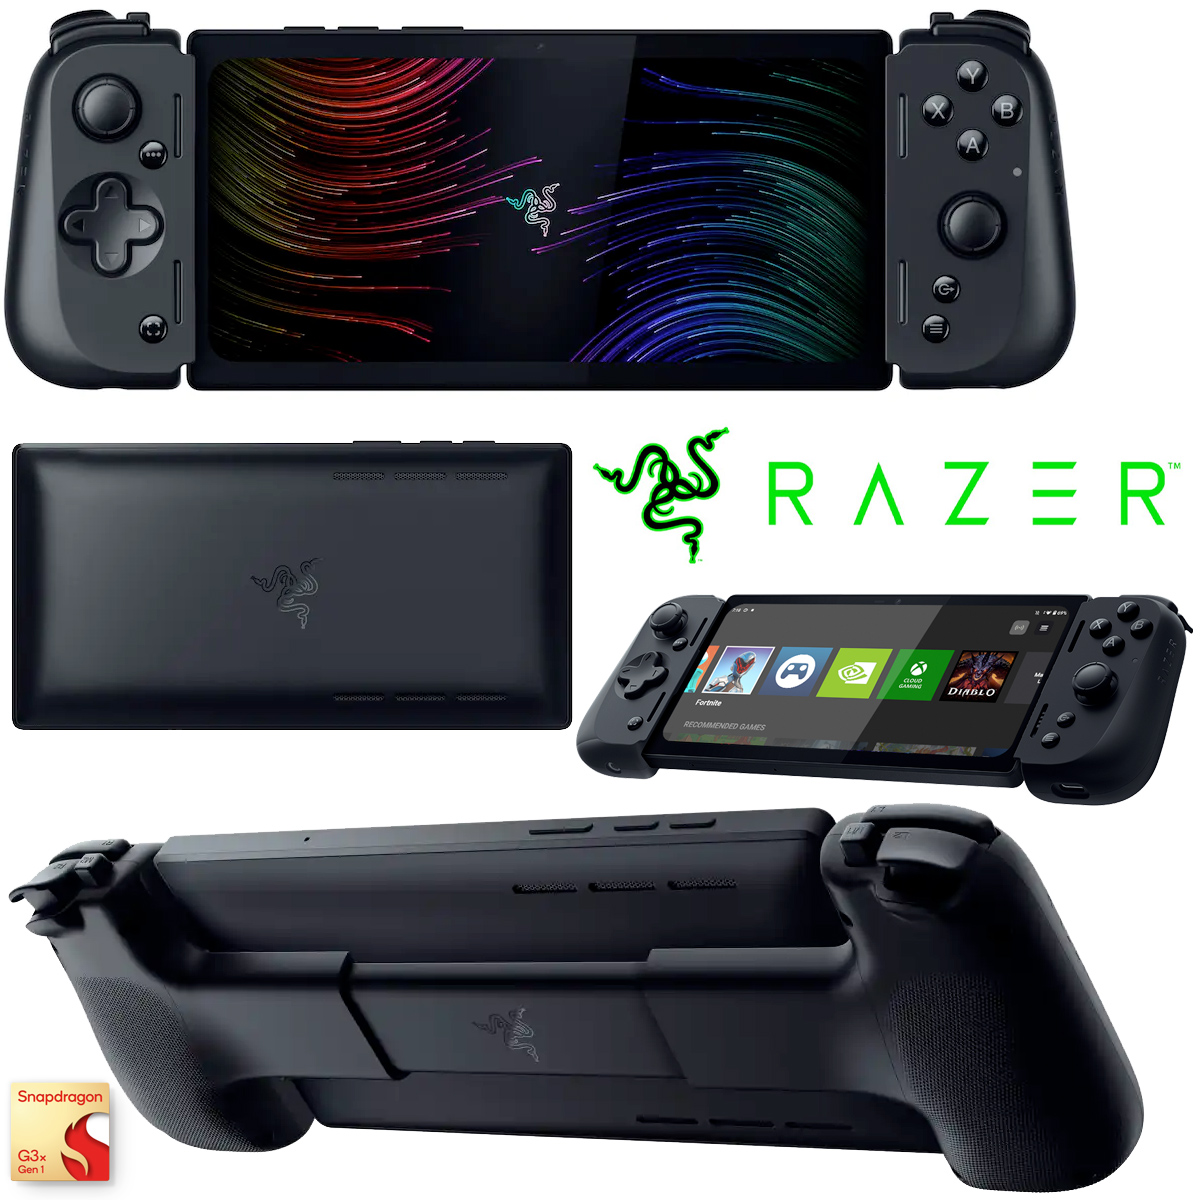 Razer Edge 5G Android Gaming Handheld